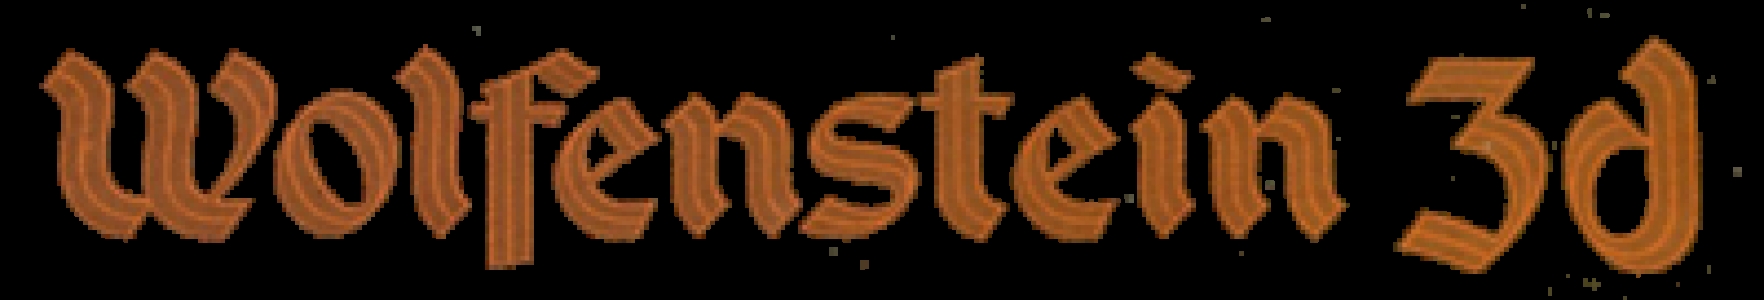 Wolfenstein 3D clearlogo